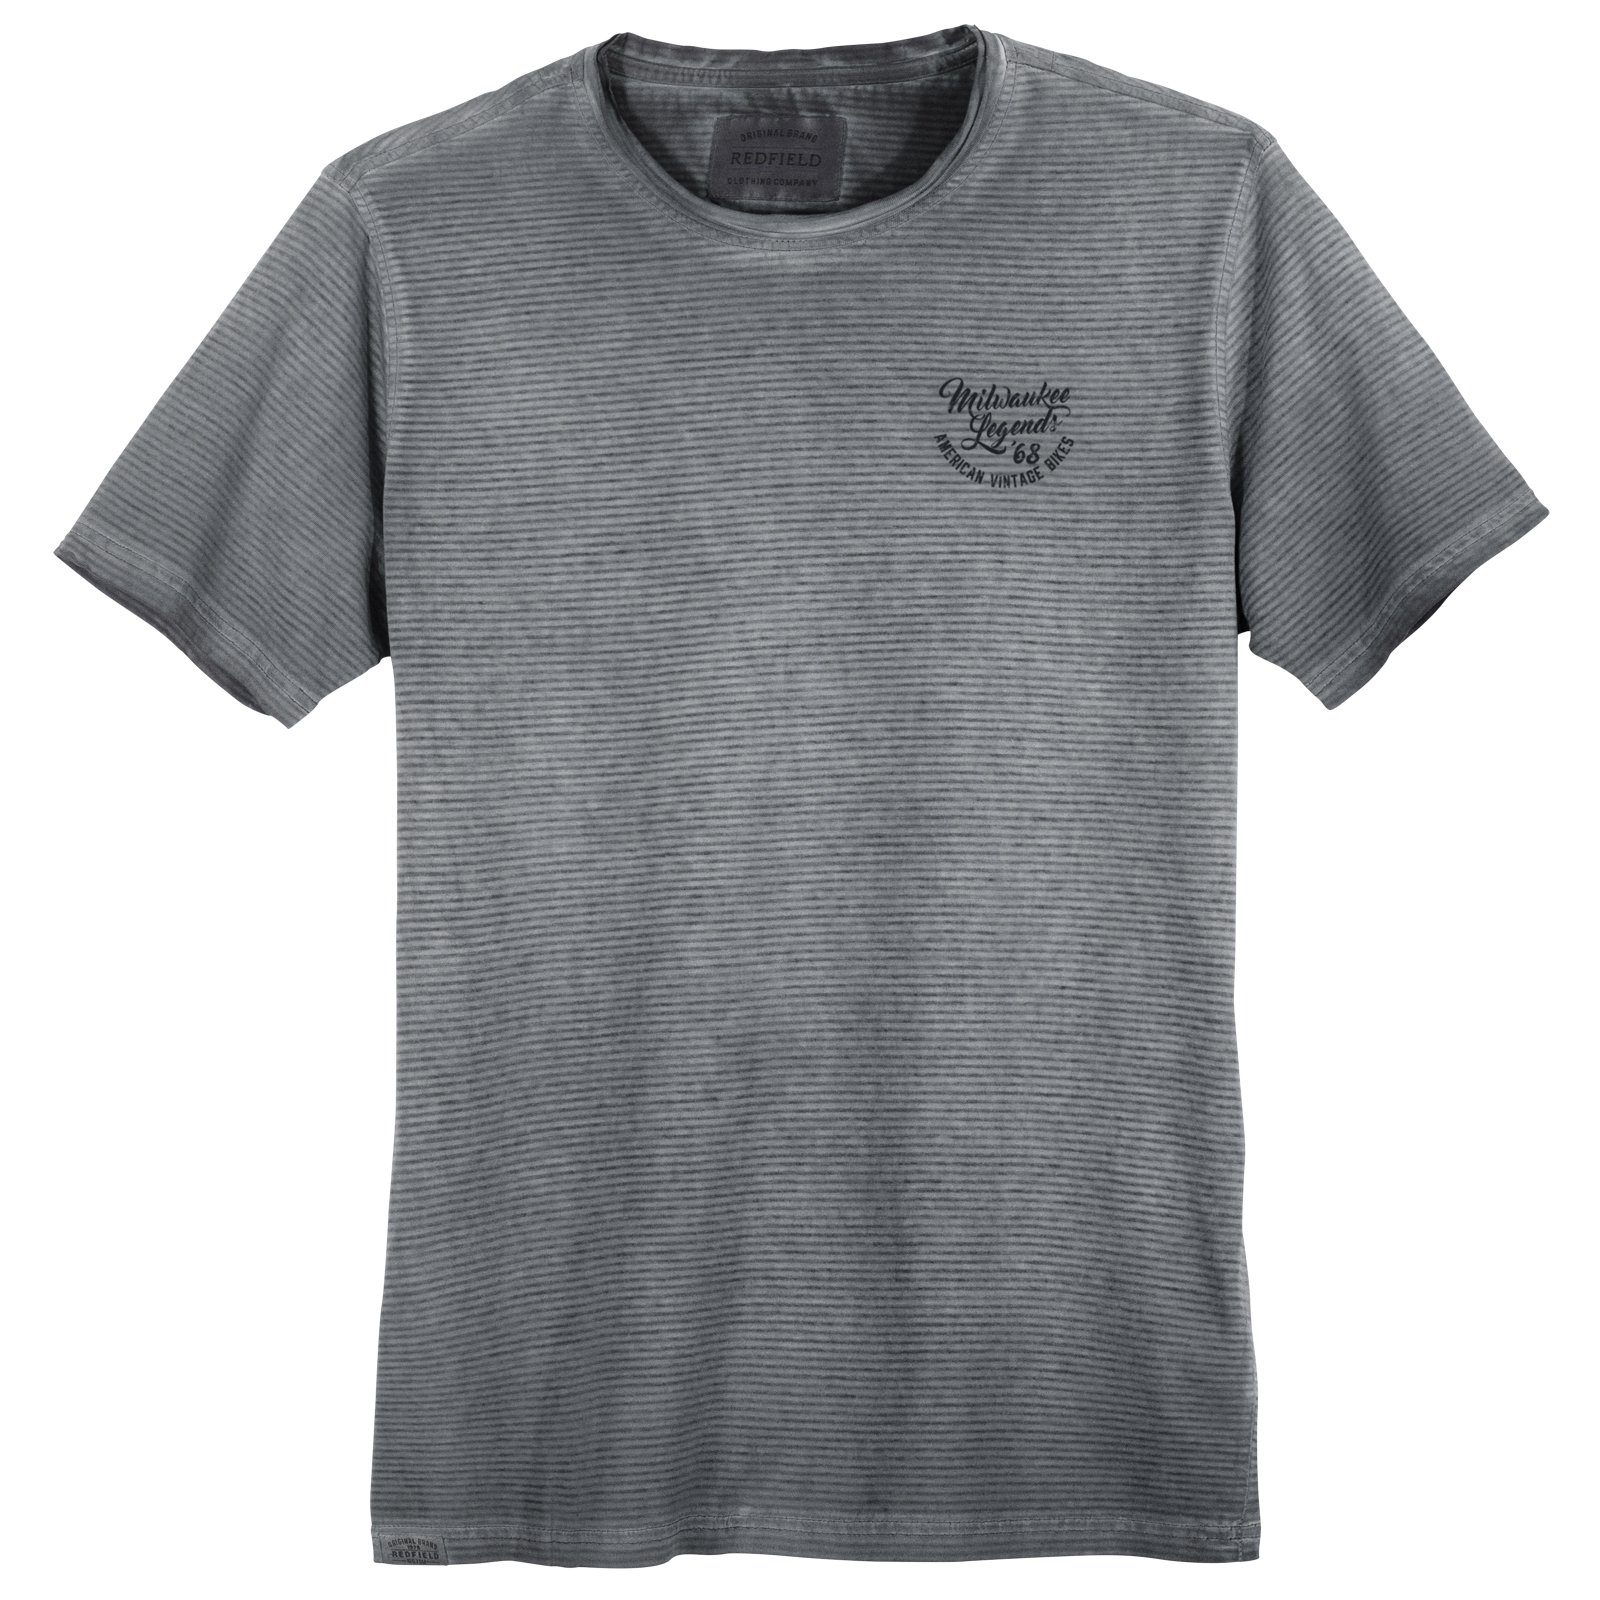 Größen Used geringelt redfield grau Herren Print-Shirt modisch Look T-Shirt Große Redfield